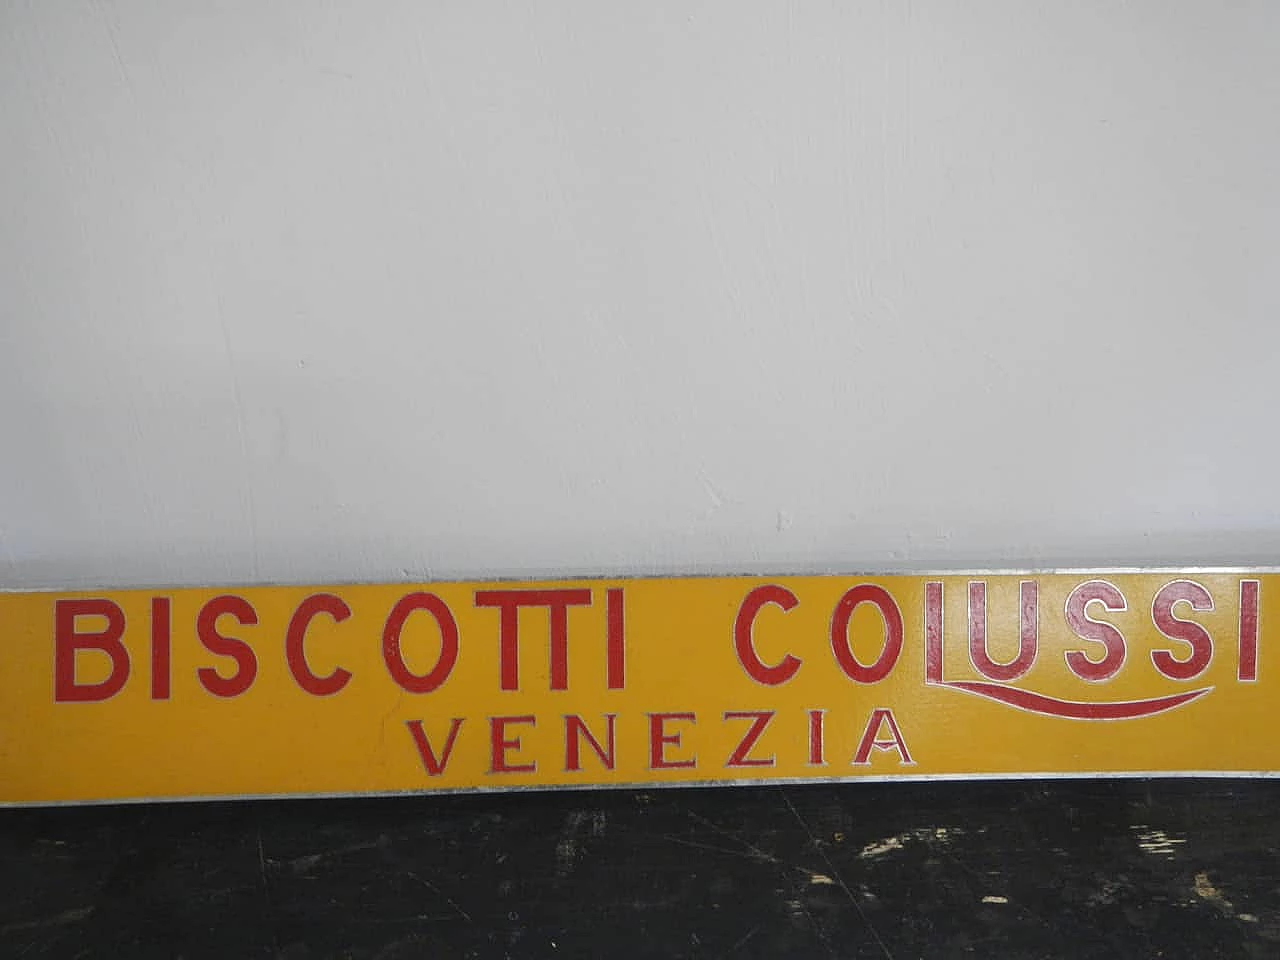 Biscotti Colussi Venezia sign, 1950s 2